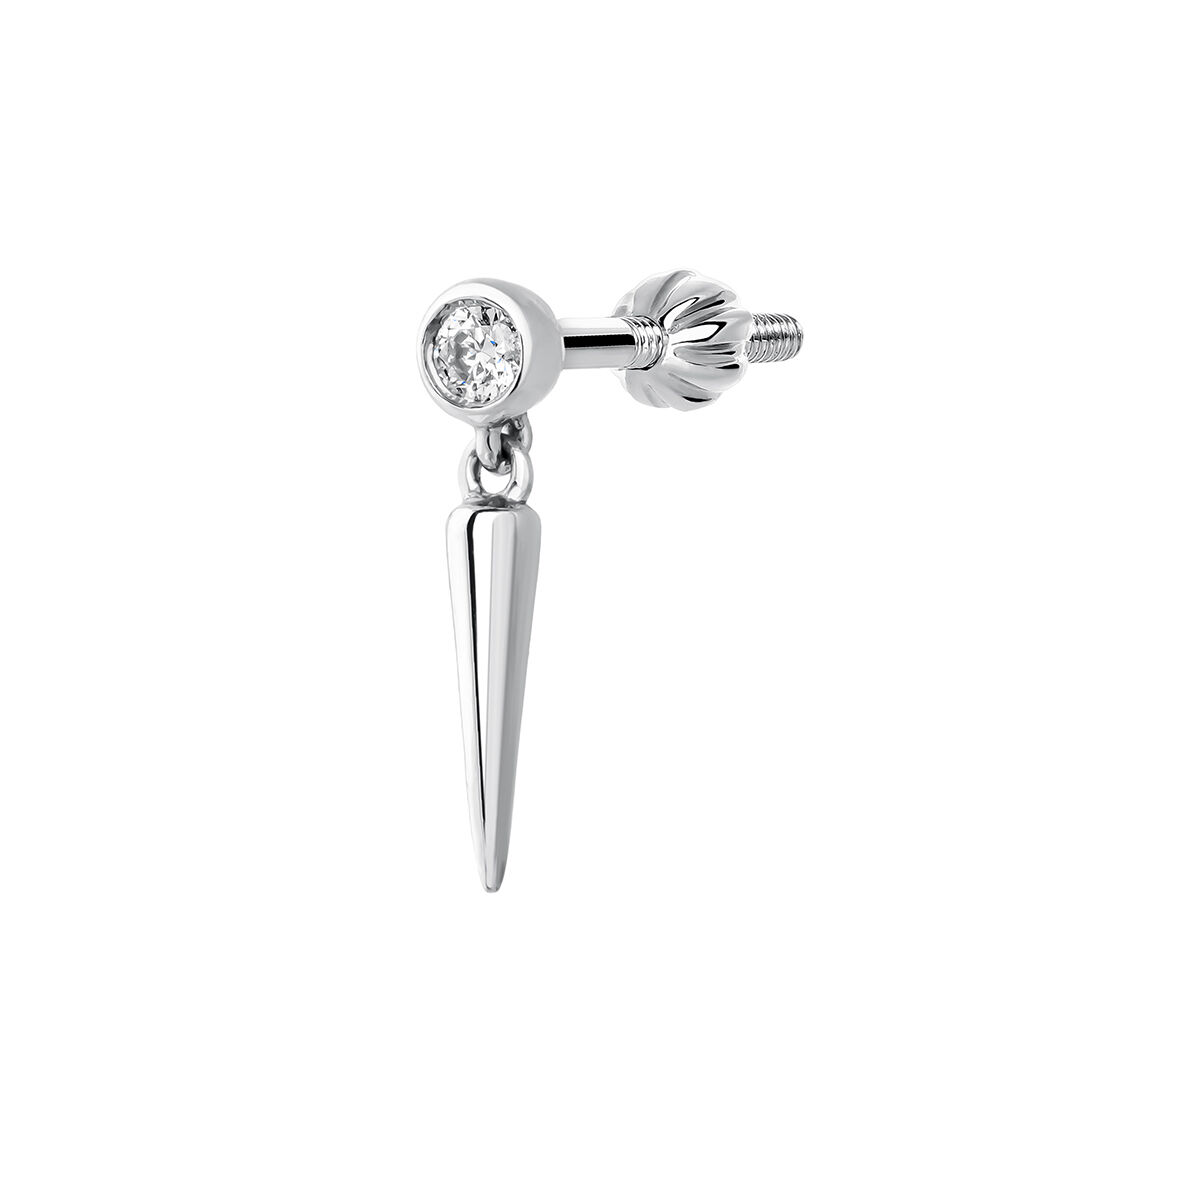 White gold spike diamond earring piercing 0.02 ct , J03876-01-H, hi-res